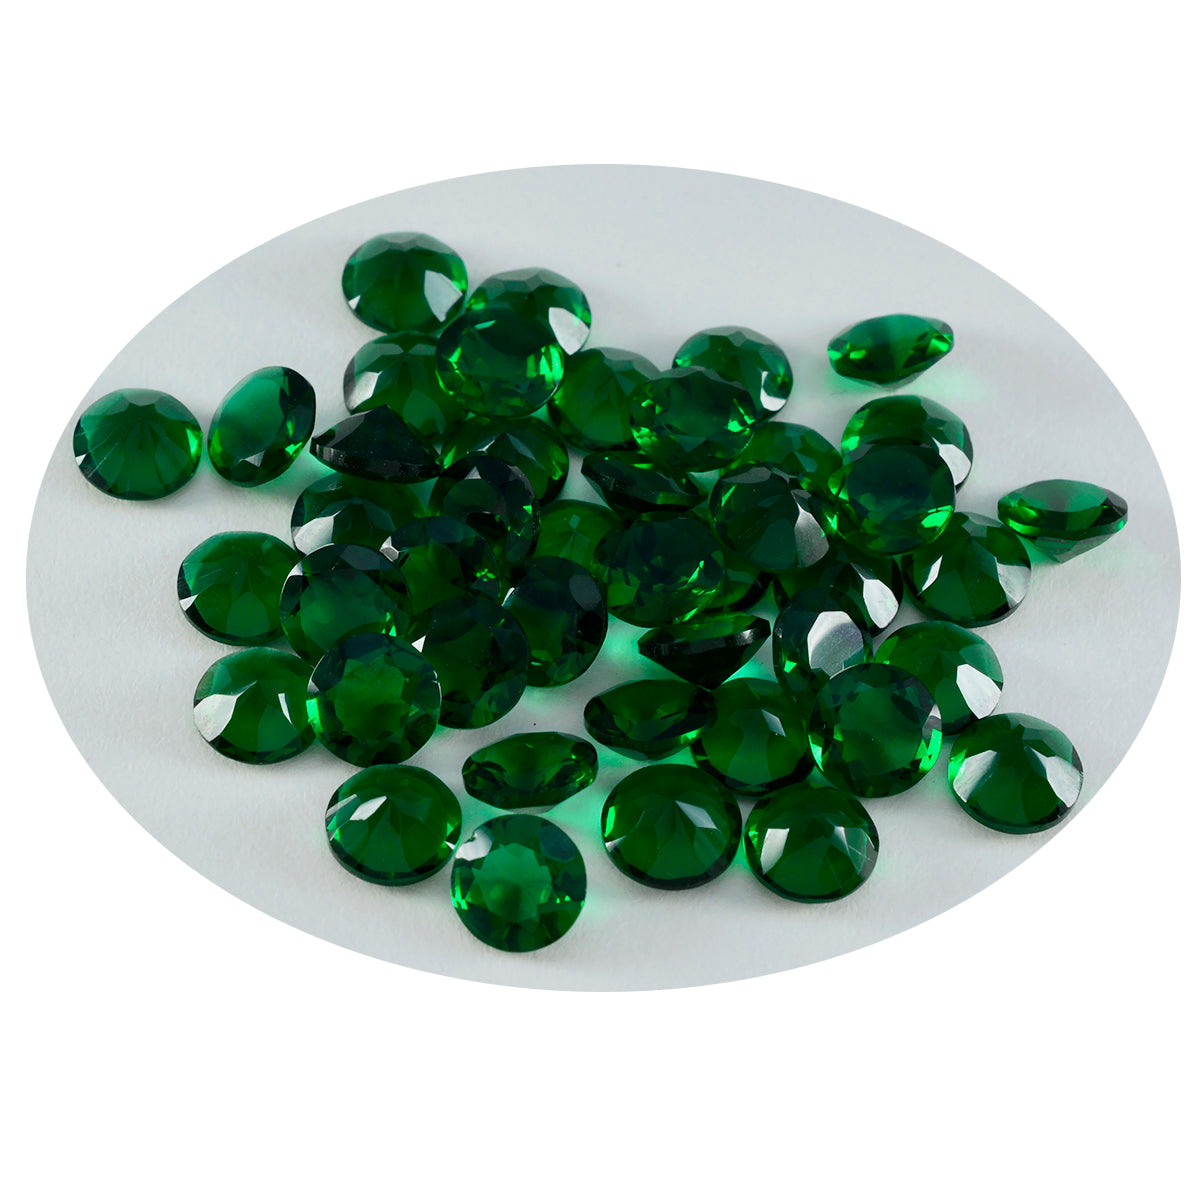 Riyogems 1pc vert émeraude cz facettes 2x2mm forme ronde qualité impressionnante pierre en vrac